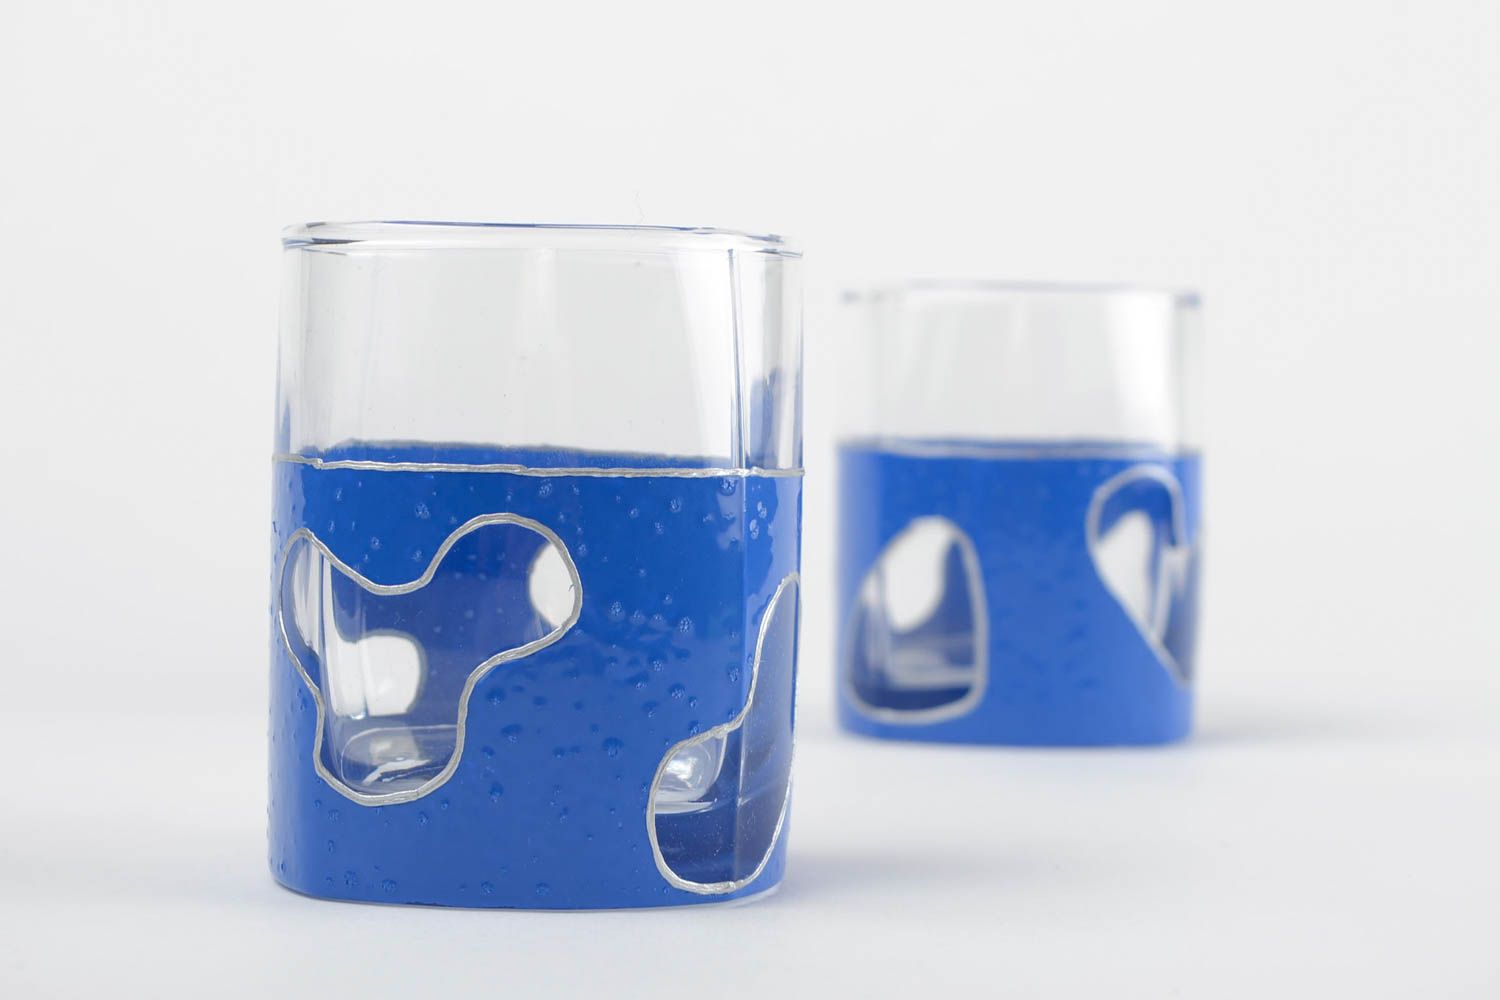 Handmade Farbige Trinkglaser In Blau Geschirr Set 2 Stuck Deko Fur Kuche